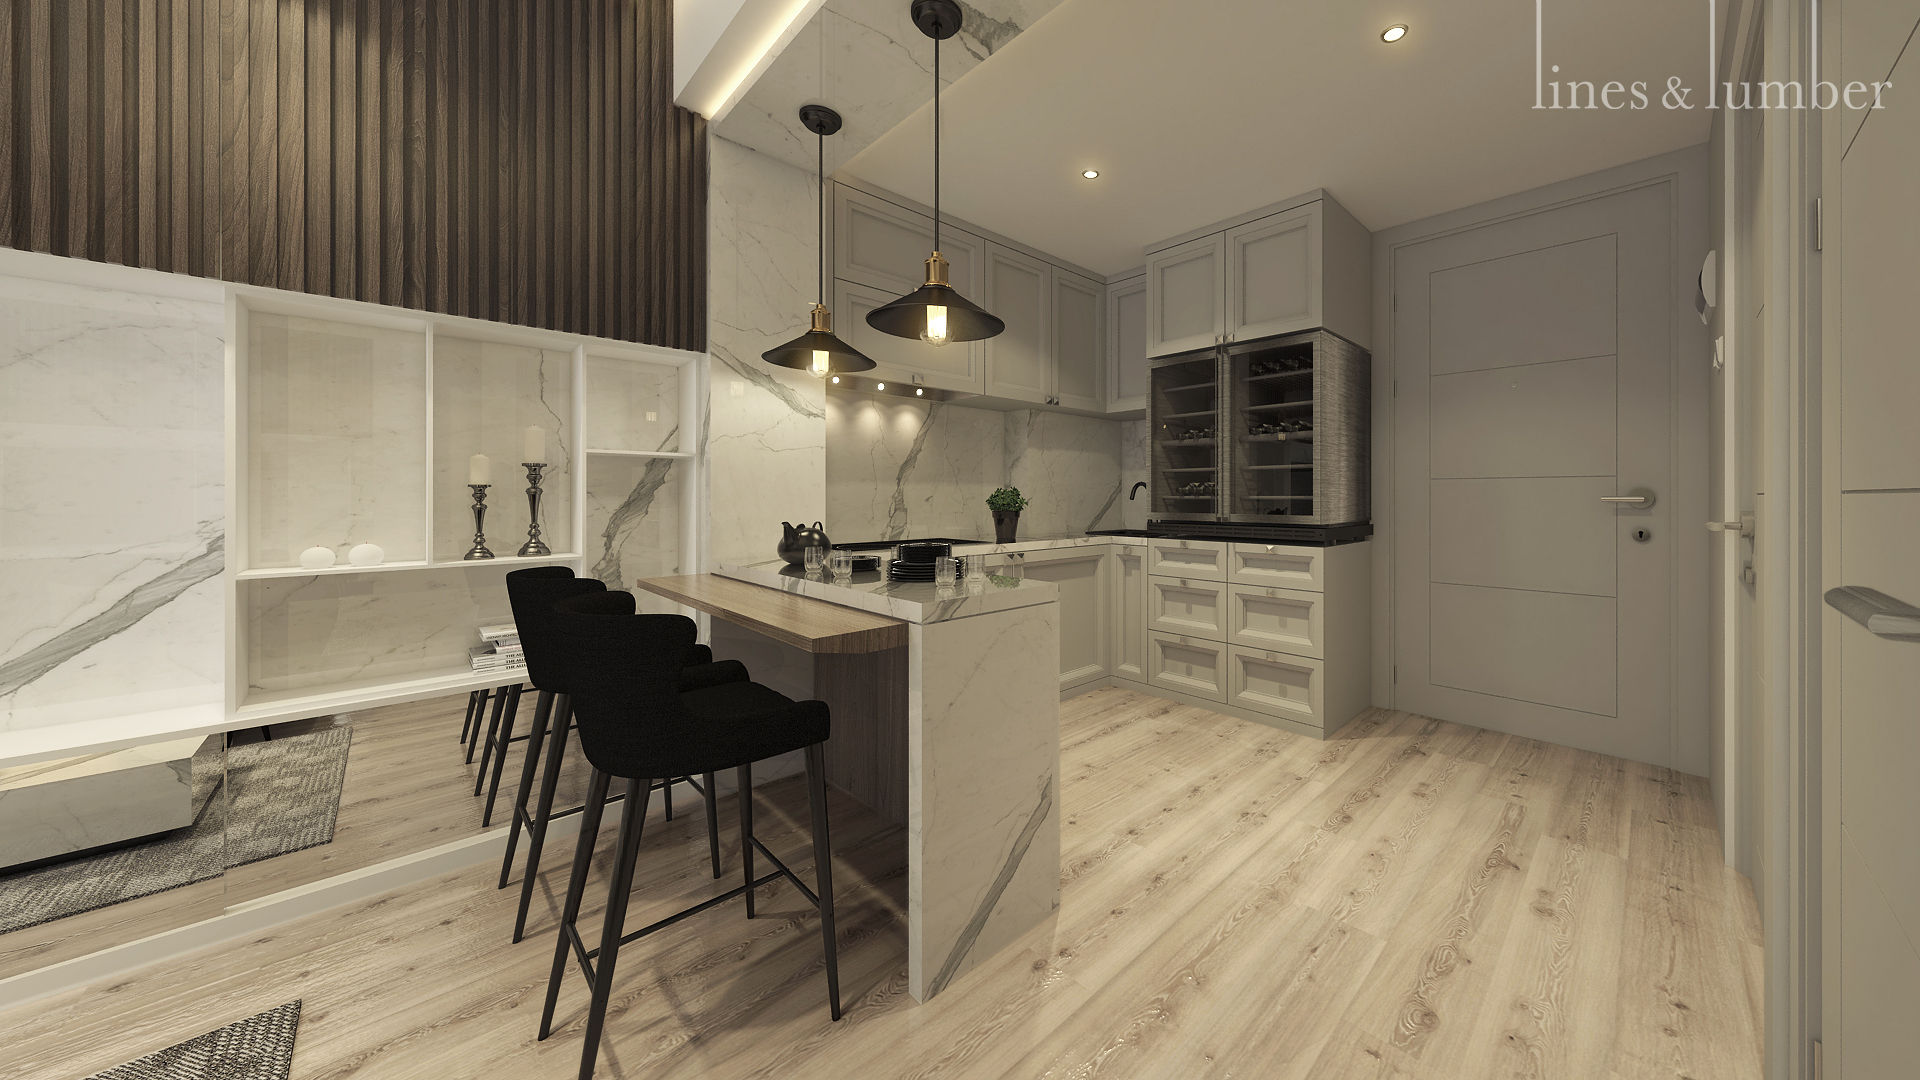 Pantry/Ruang Makan Lines & Lumber Dapur Gaya Rustic pantry,diningroom